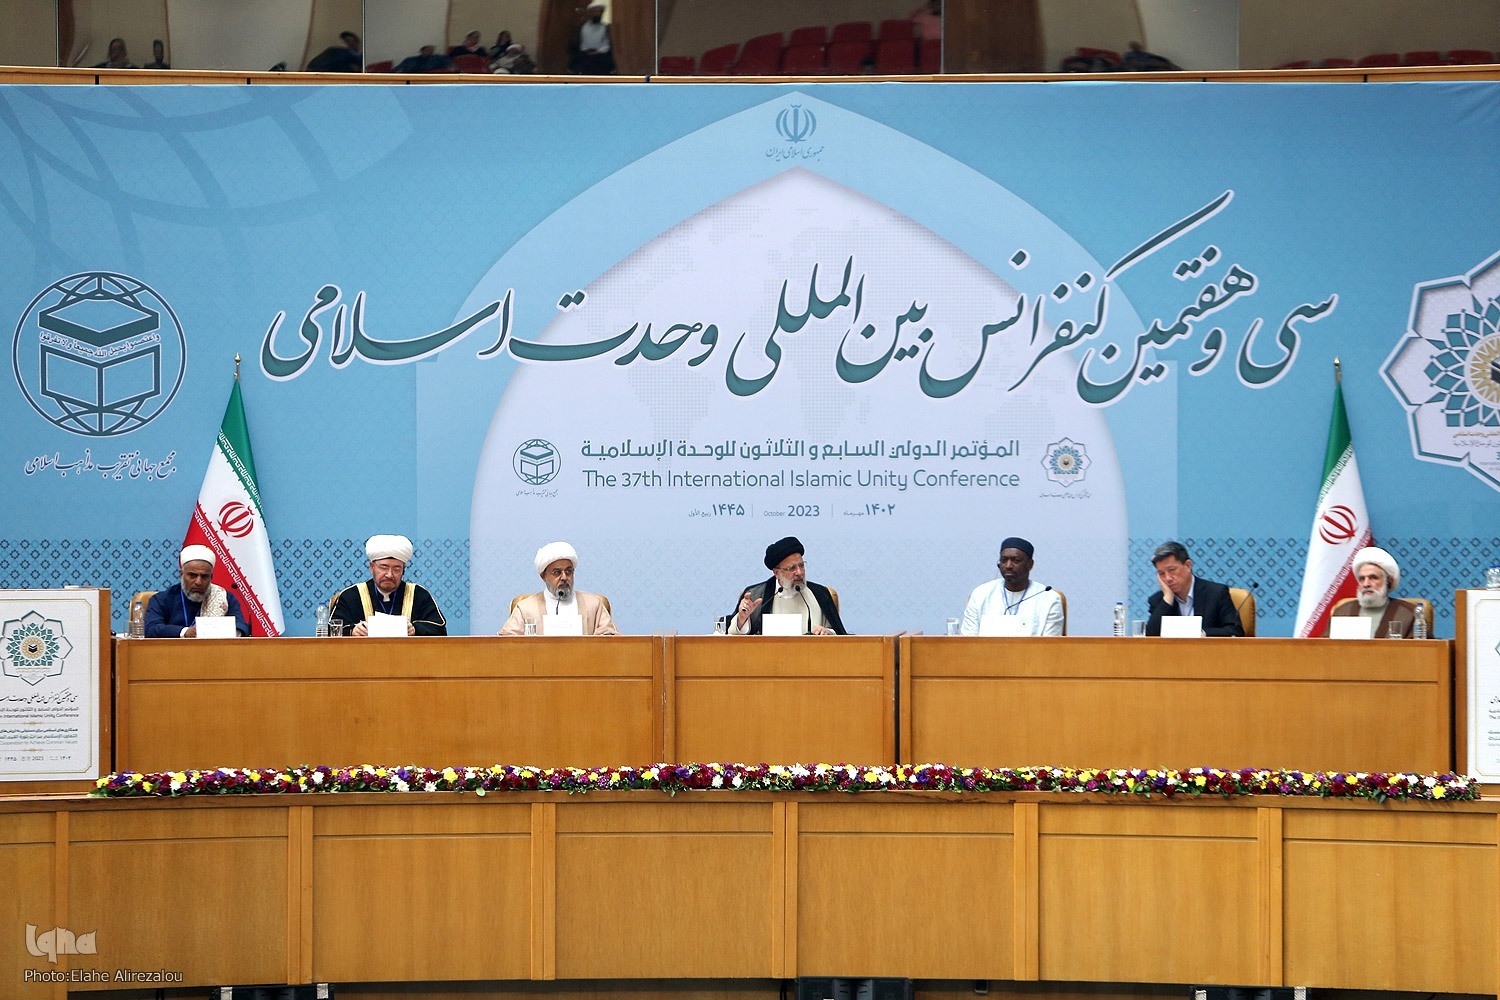 المؤتمر الدولي السابع والثلاثون للوحدة الإسلامية